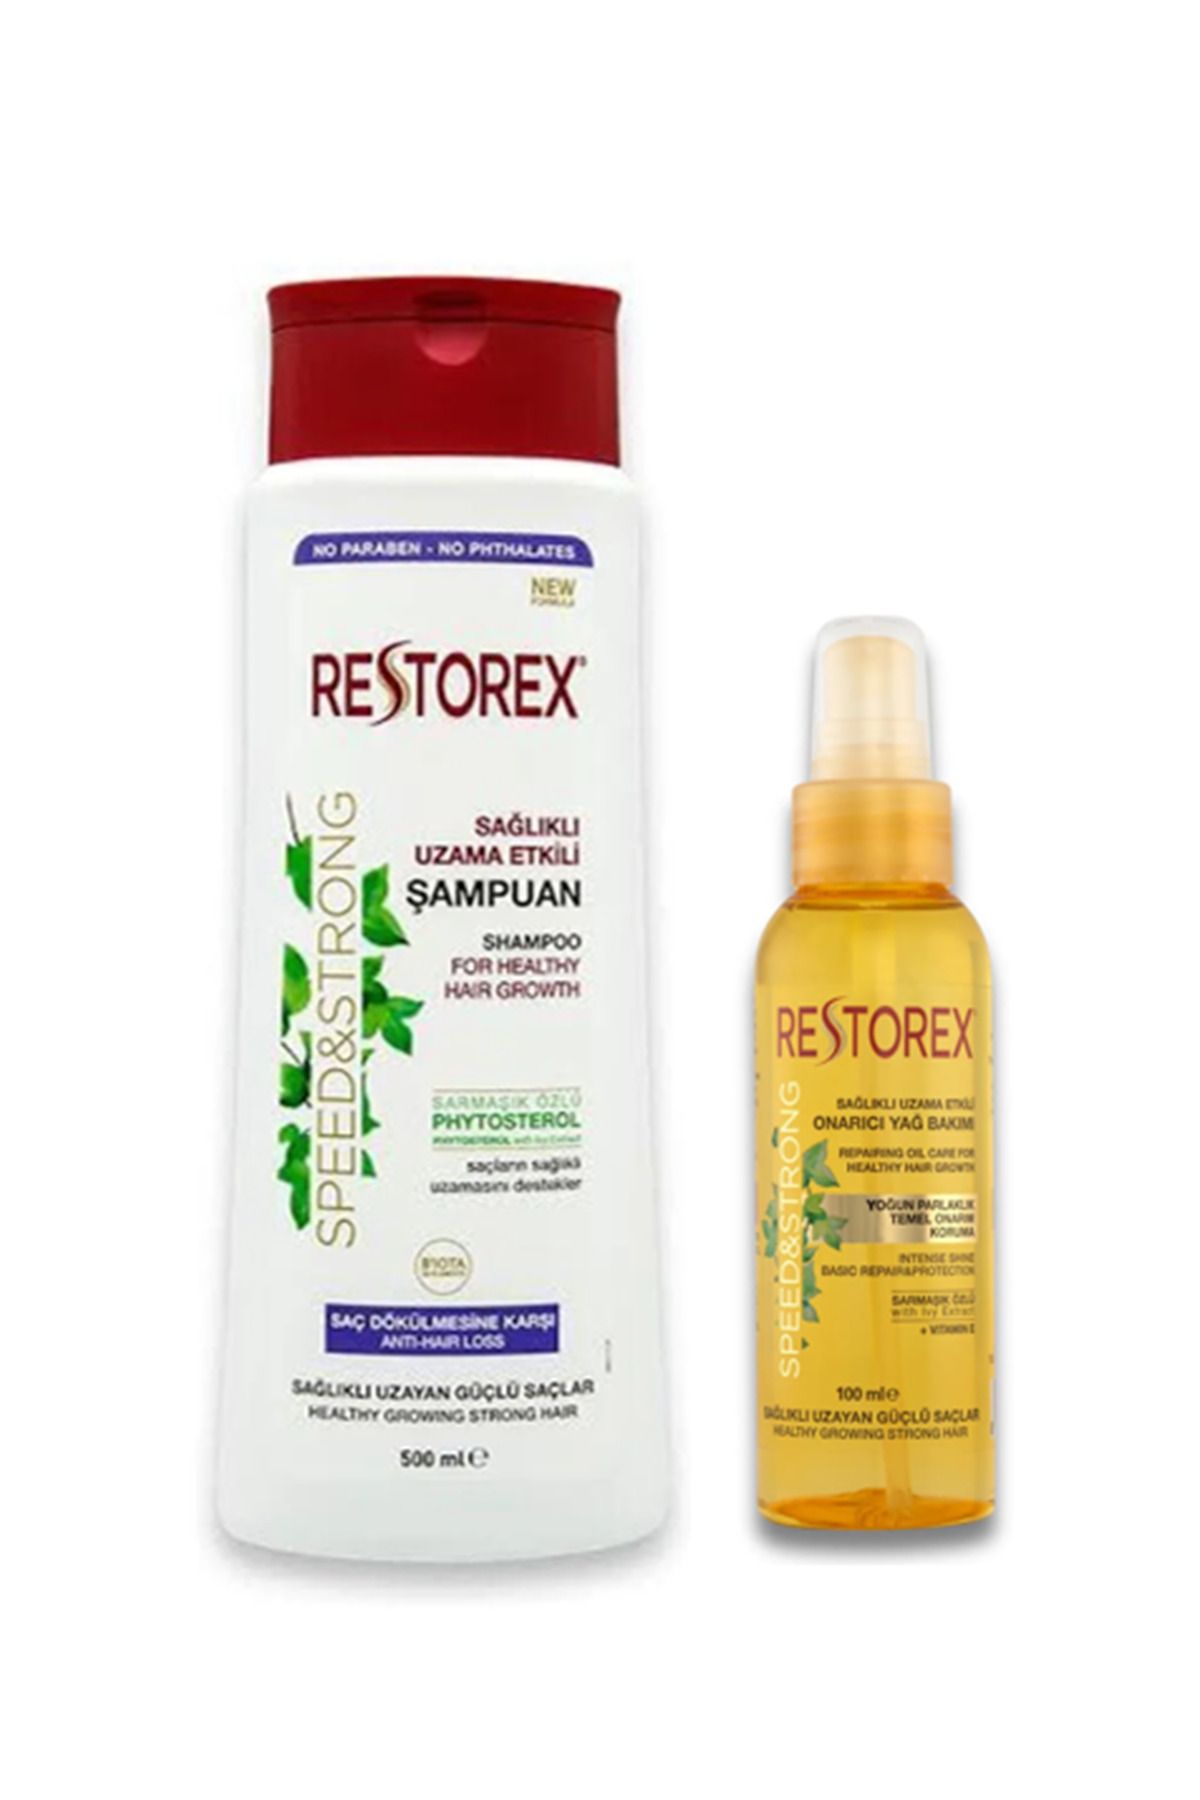 Restorex Sarmaşık Özlü Saç Dökülmesine Karşı Şampuan 500 Ml Ve Saç Onarıcı Yağ Bakımı 100 Ml